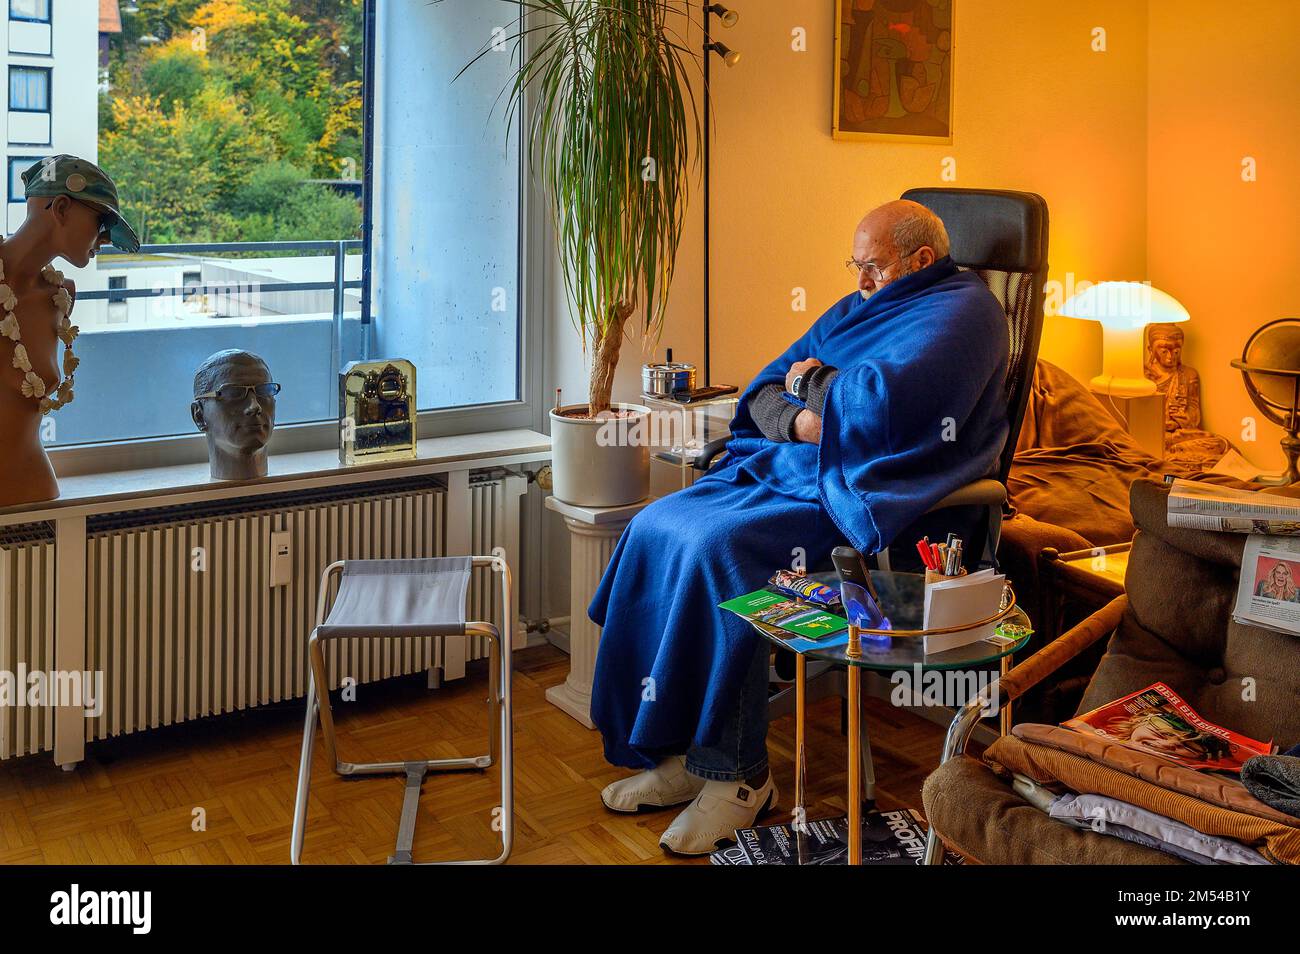 Vecchio avvolto in coperte, risparmiare energia, congelare a causa di Putin, risparmiare costi di riscaldamento, bassa temperatura ambiente, Baviera, Germania Foto Stock